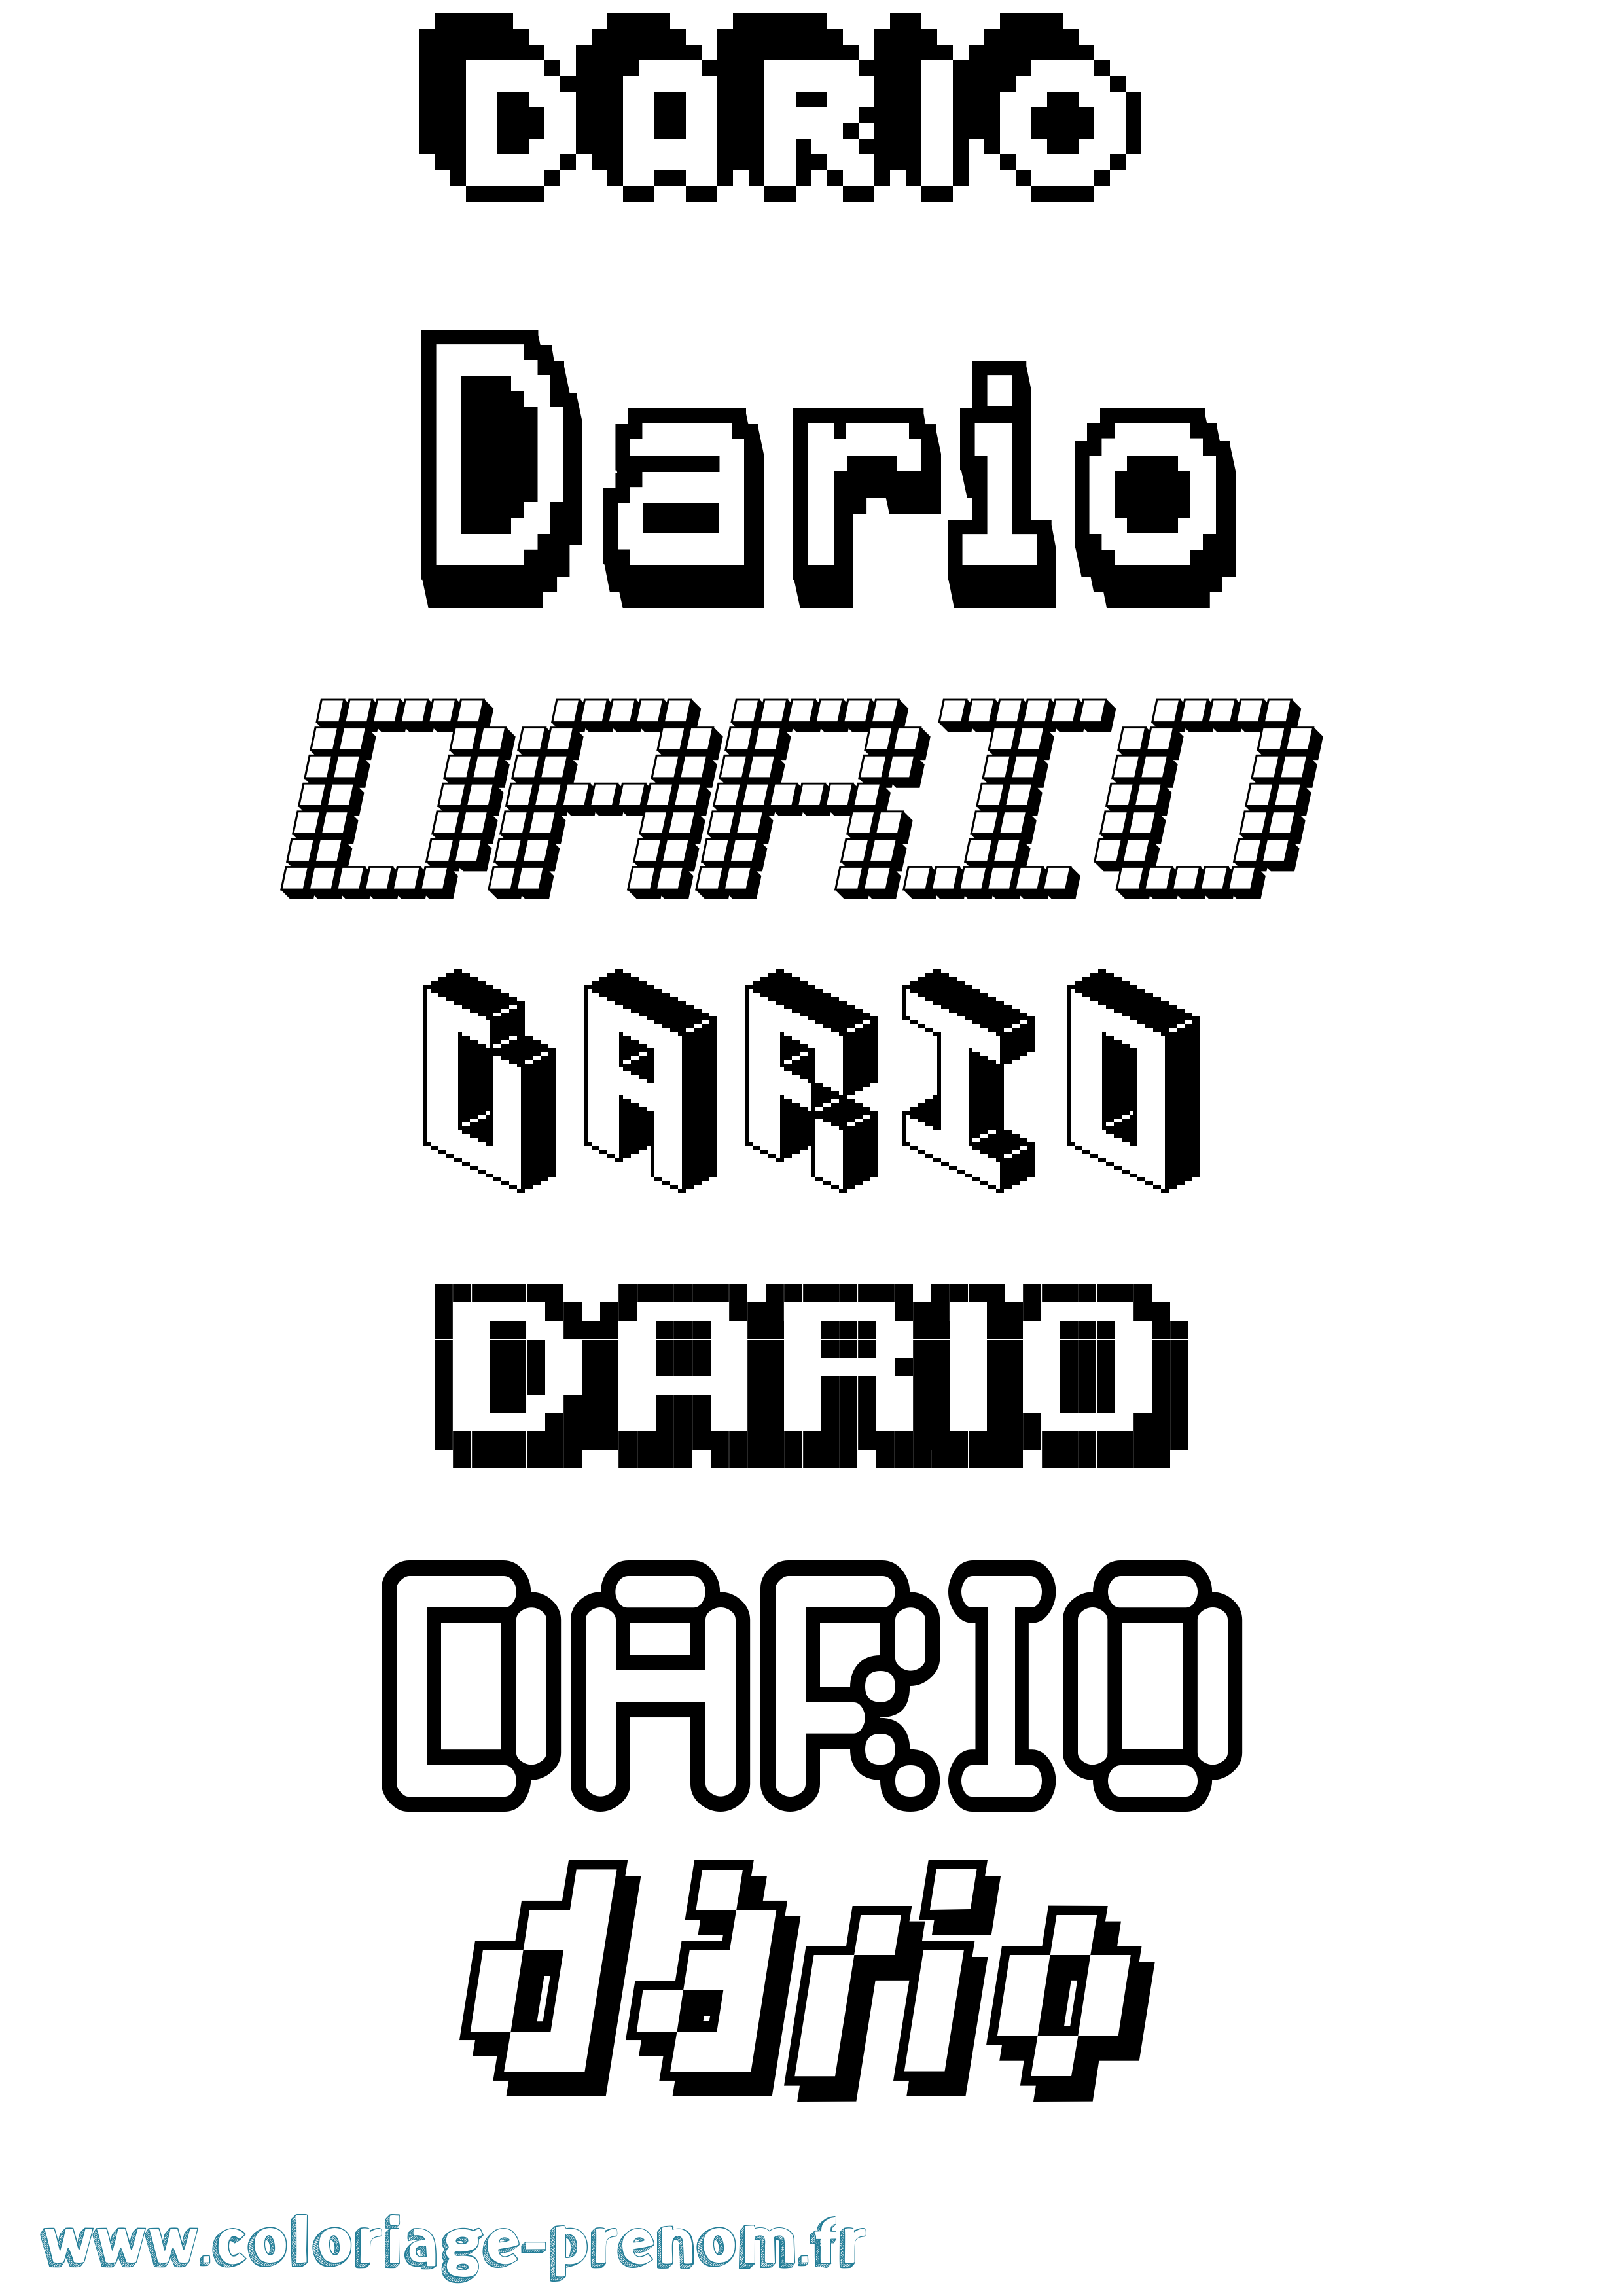 Coloriage prénom Dario Pixel